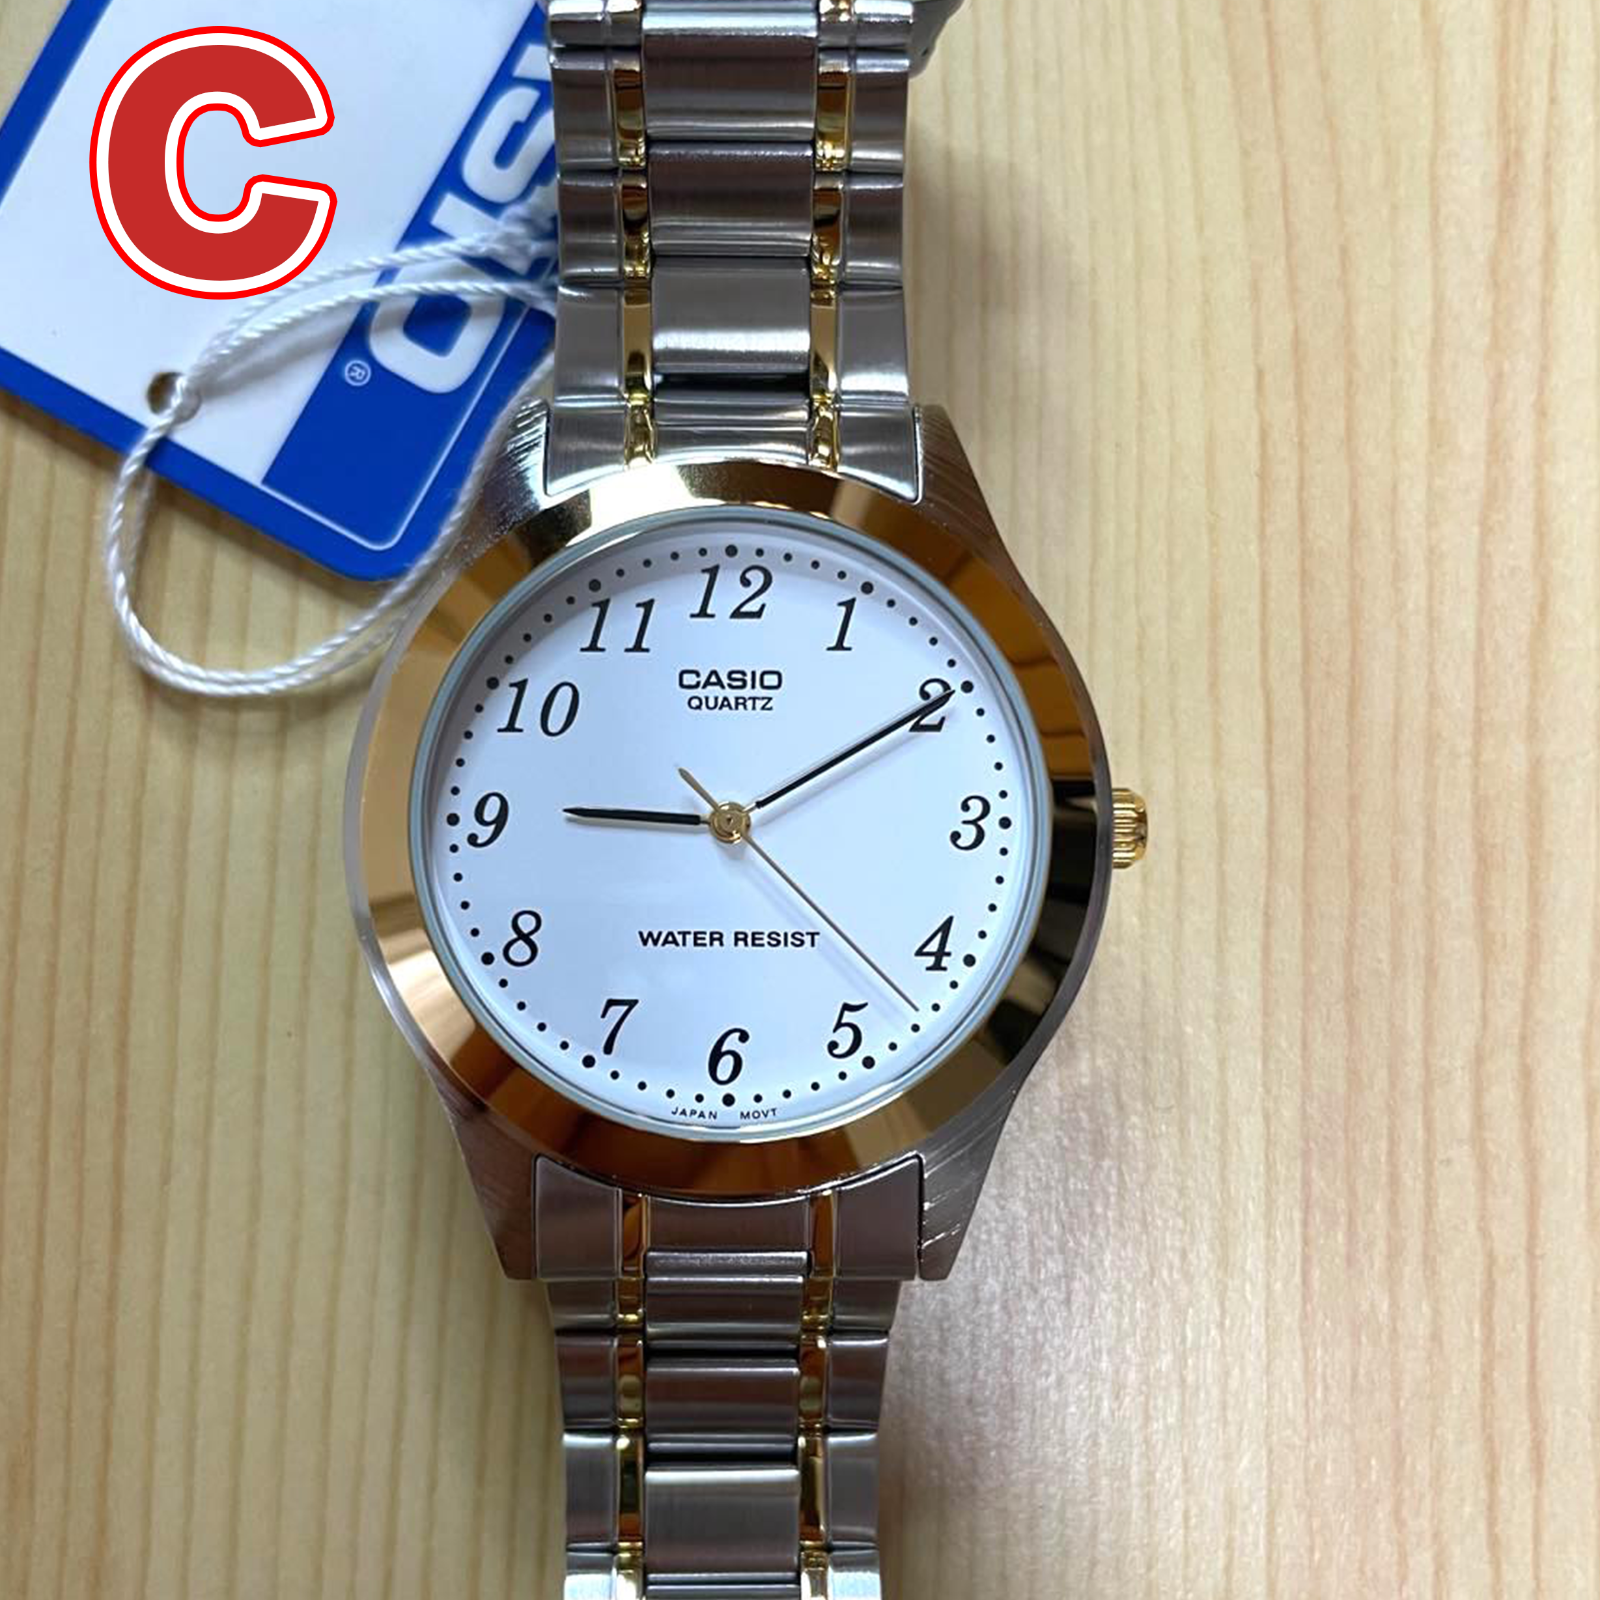 新品 CASIO メンズ腕時計 カシオ 正規品 MTP-1128 S/S